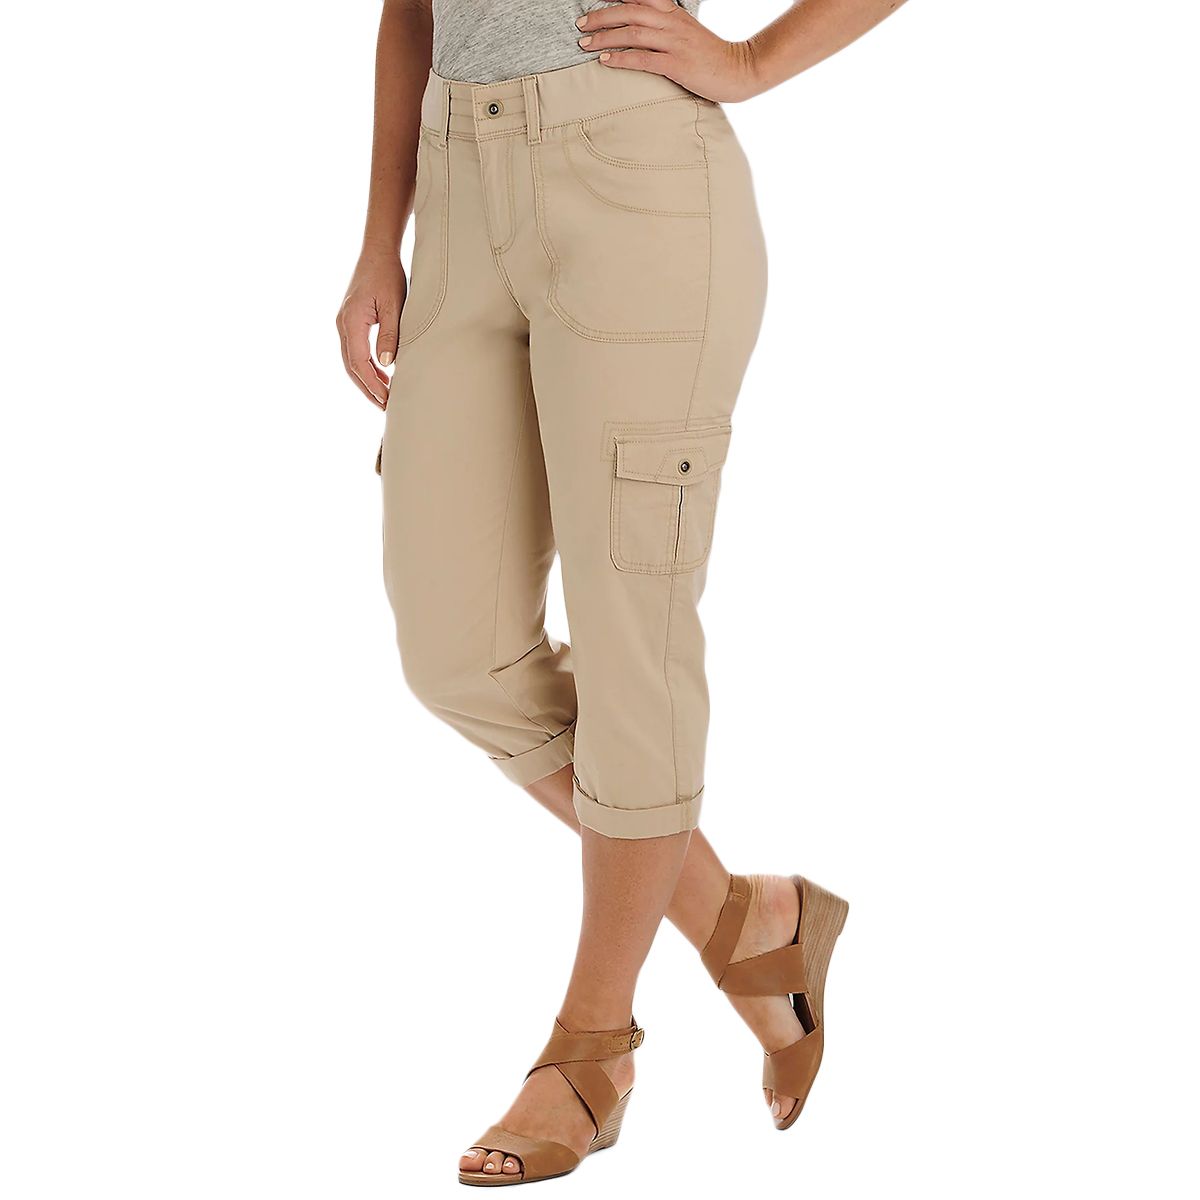 DASH Emma Capris - ShopStyle Cropped Pants